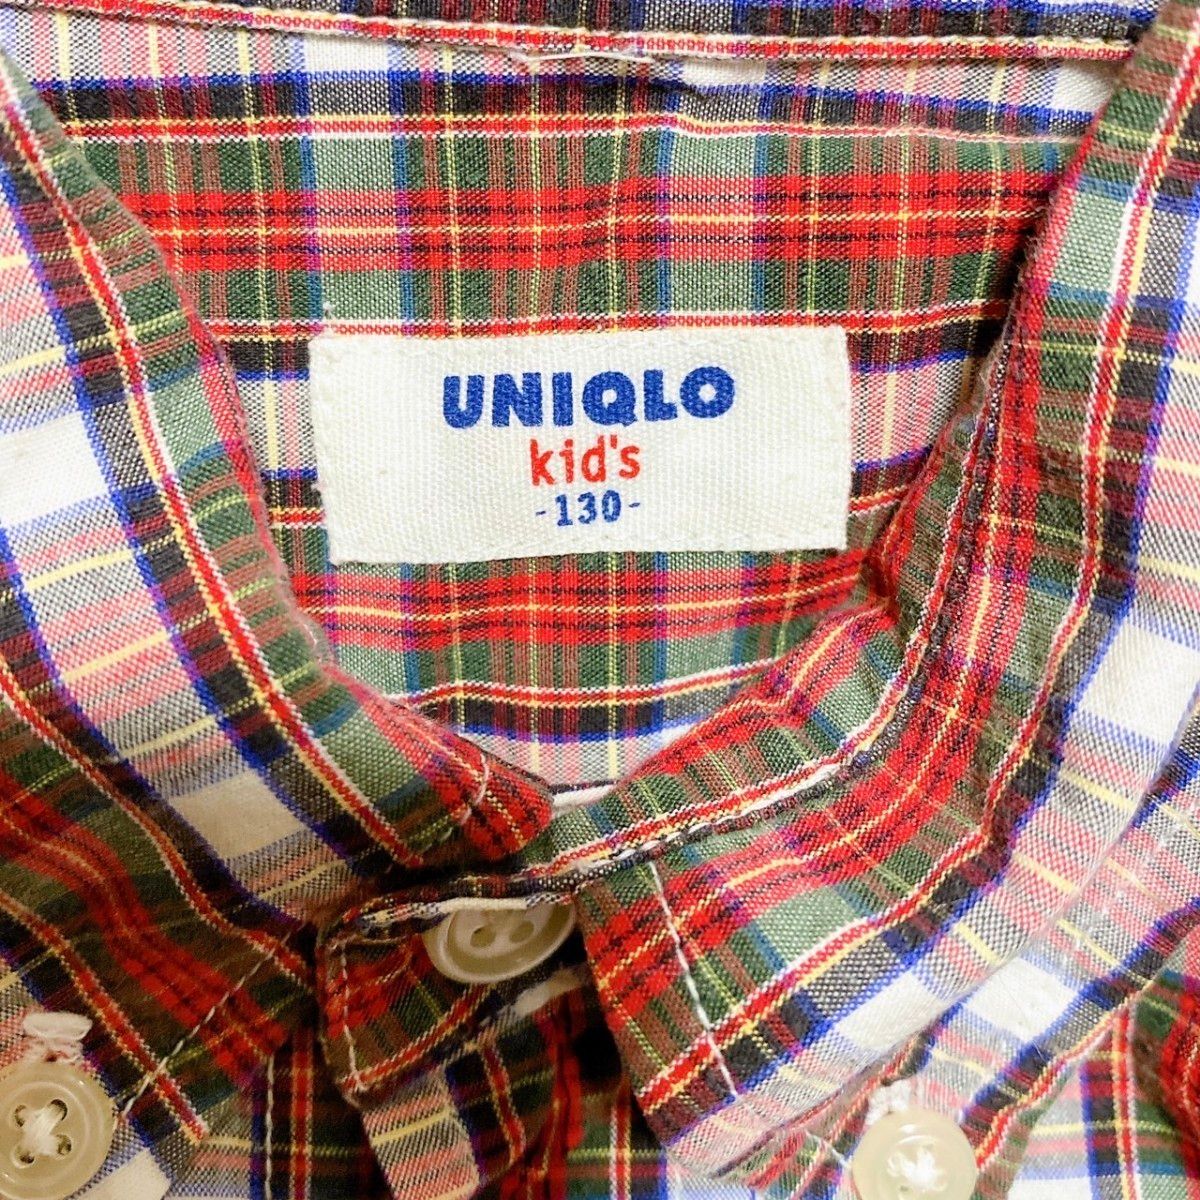 UNIQLO オールドユニクロ シャツ 長袖 ユニクロキッズ 130cm 赤 白 チェック 美品 希少 レア 旧タグ ヴィンテージ